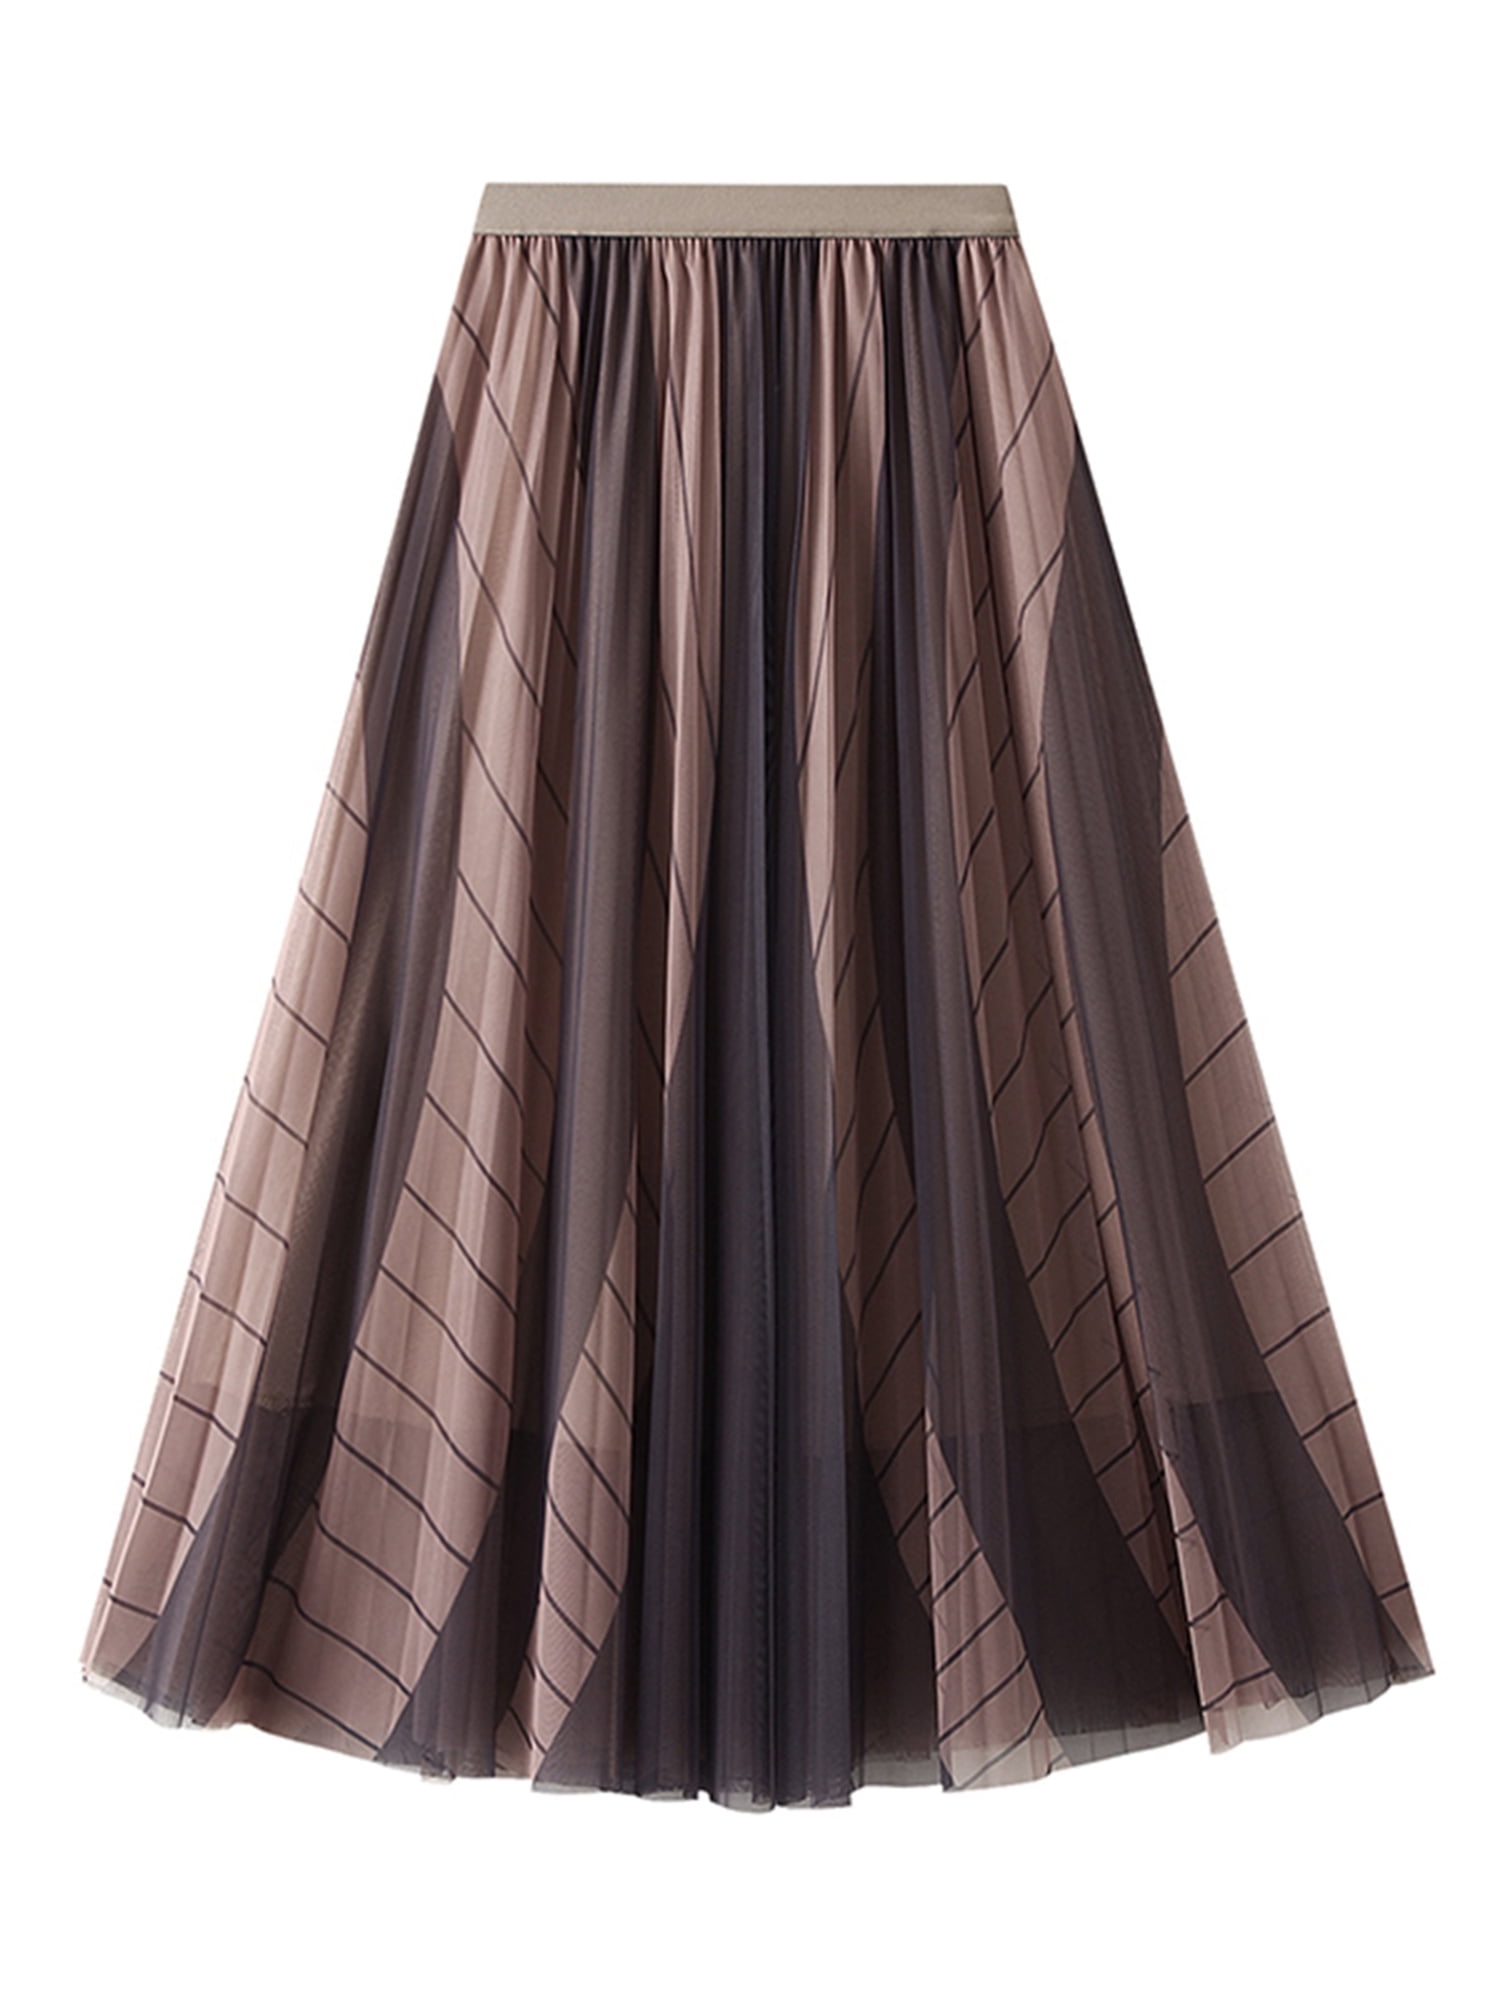 Eyicmarn Womens Tulle Midi Skirt Elastic High Waist Contrast Color